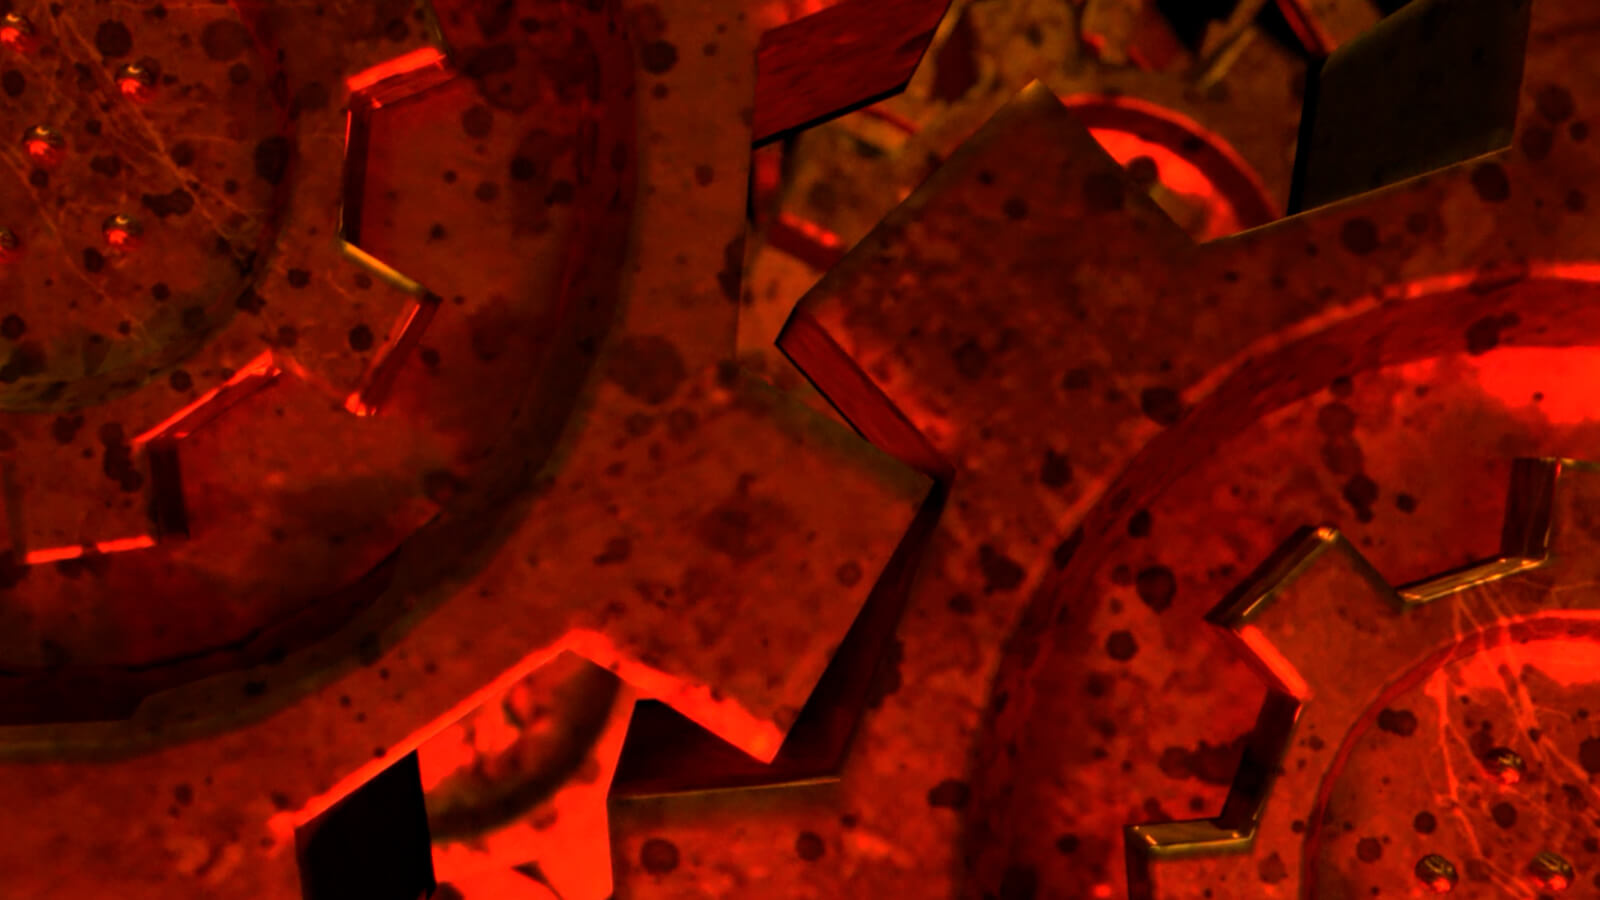 Primer plano extremo de engranages metálicos con manchas de grasa iluminados en rojo.